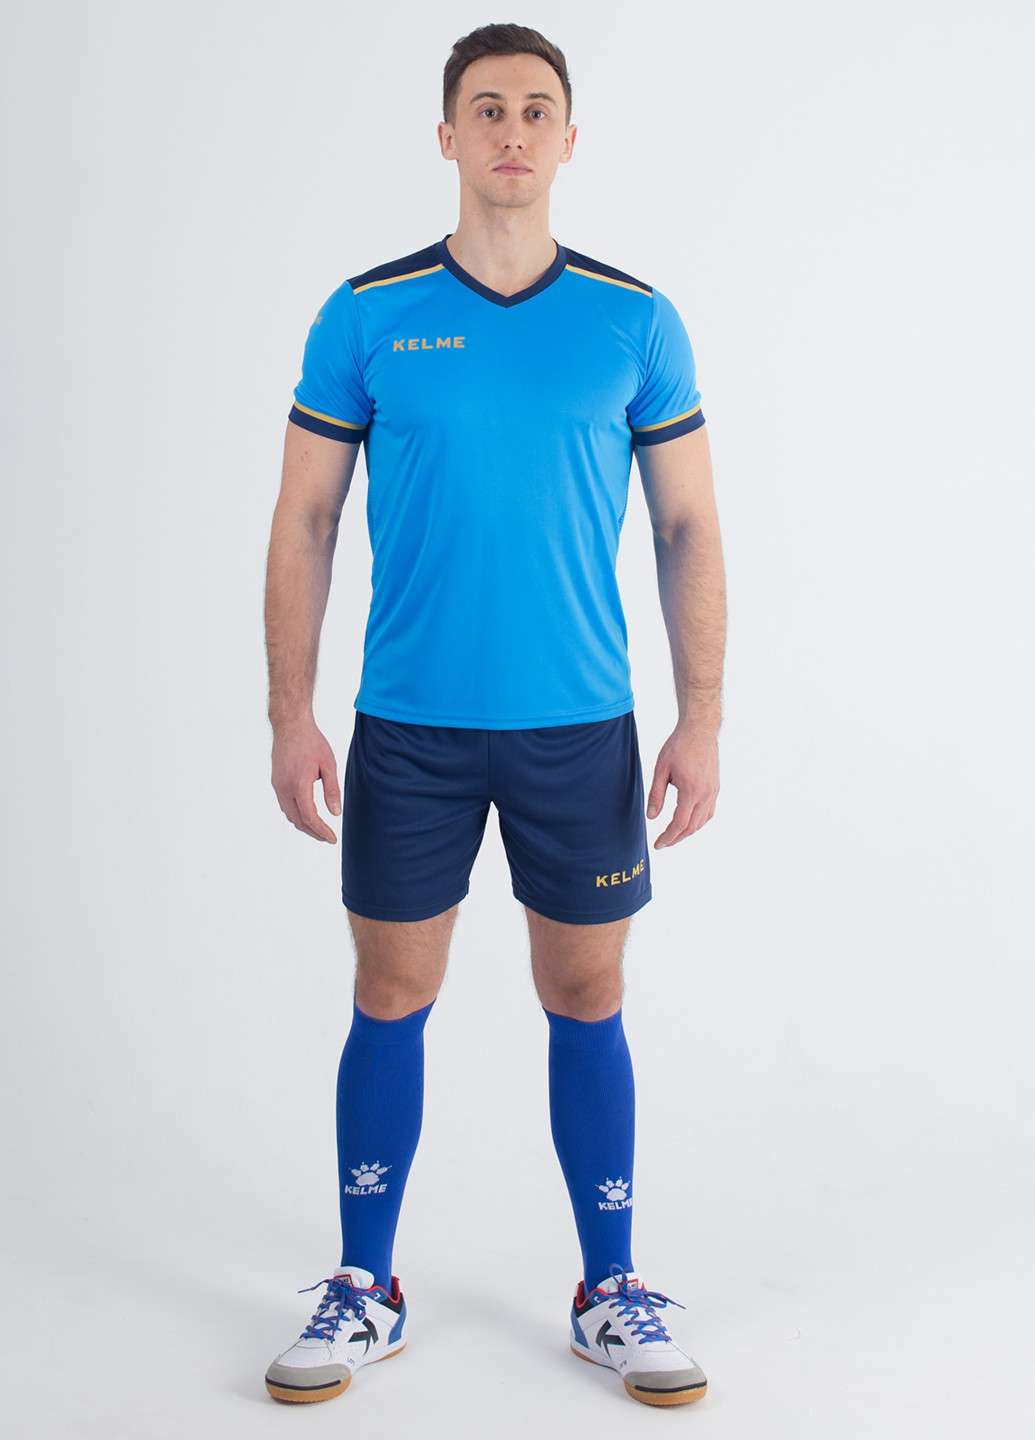 Голубой демисезонный комплект футбольной формы segovia Kelme